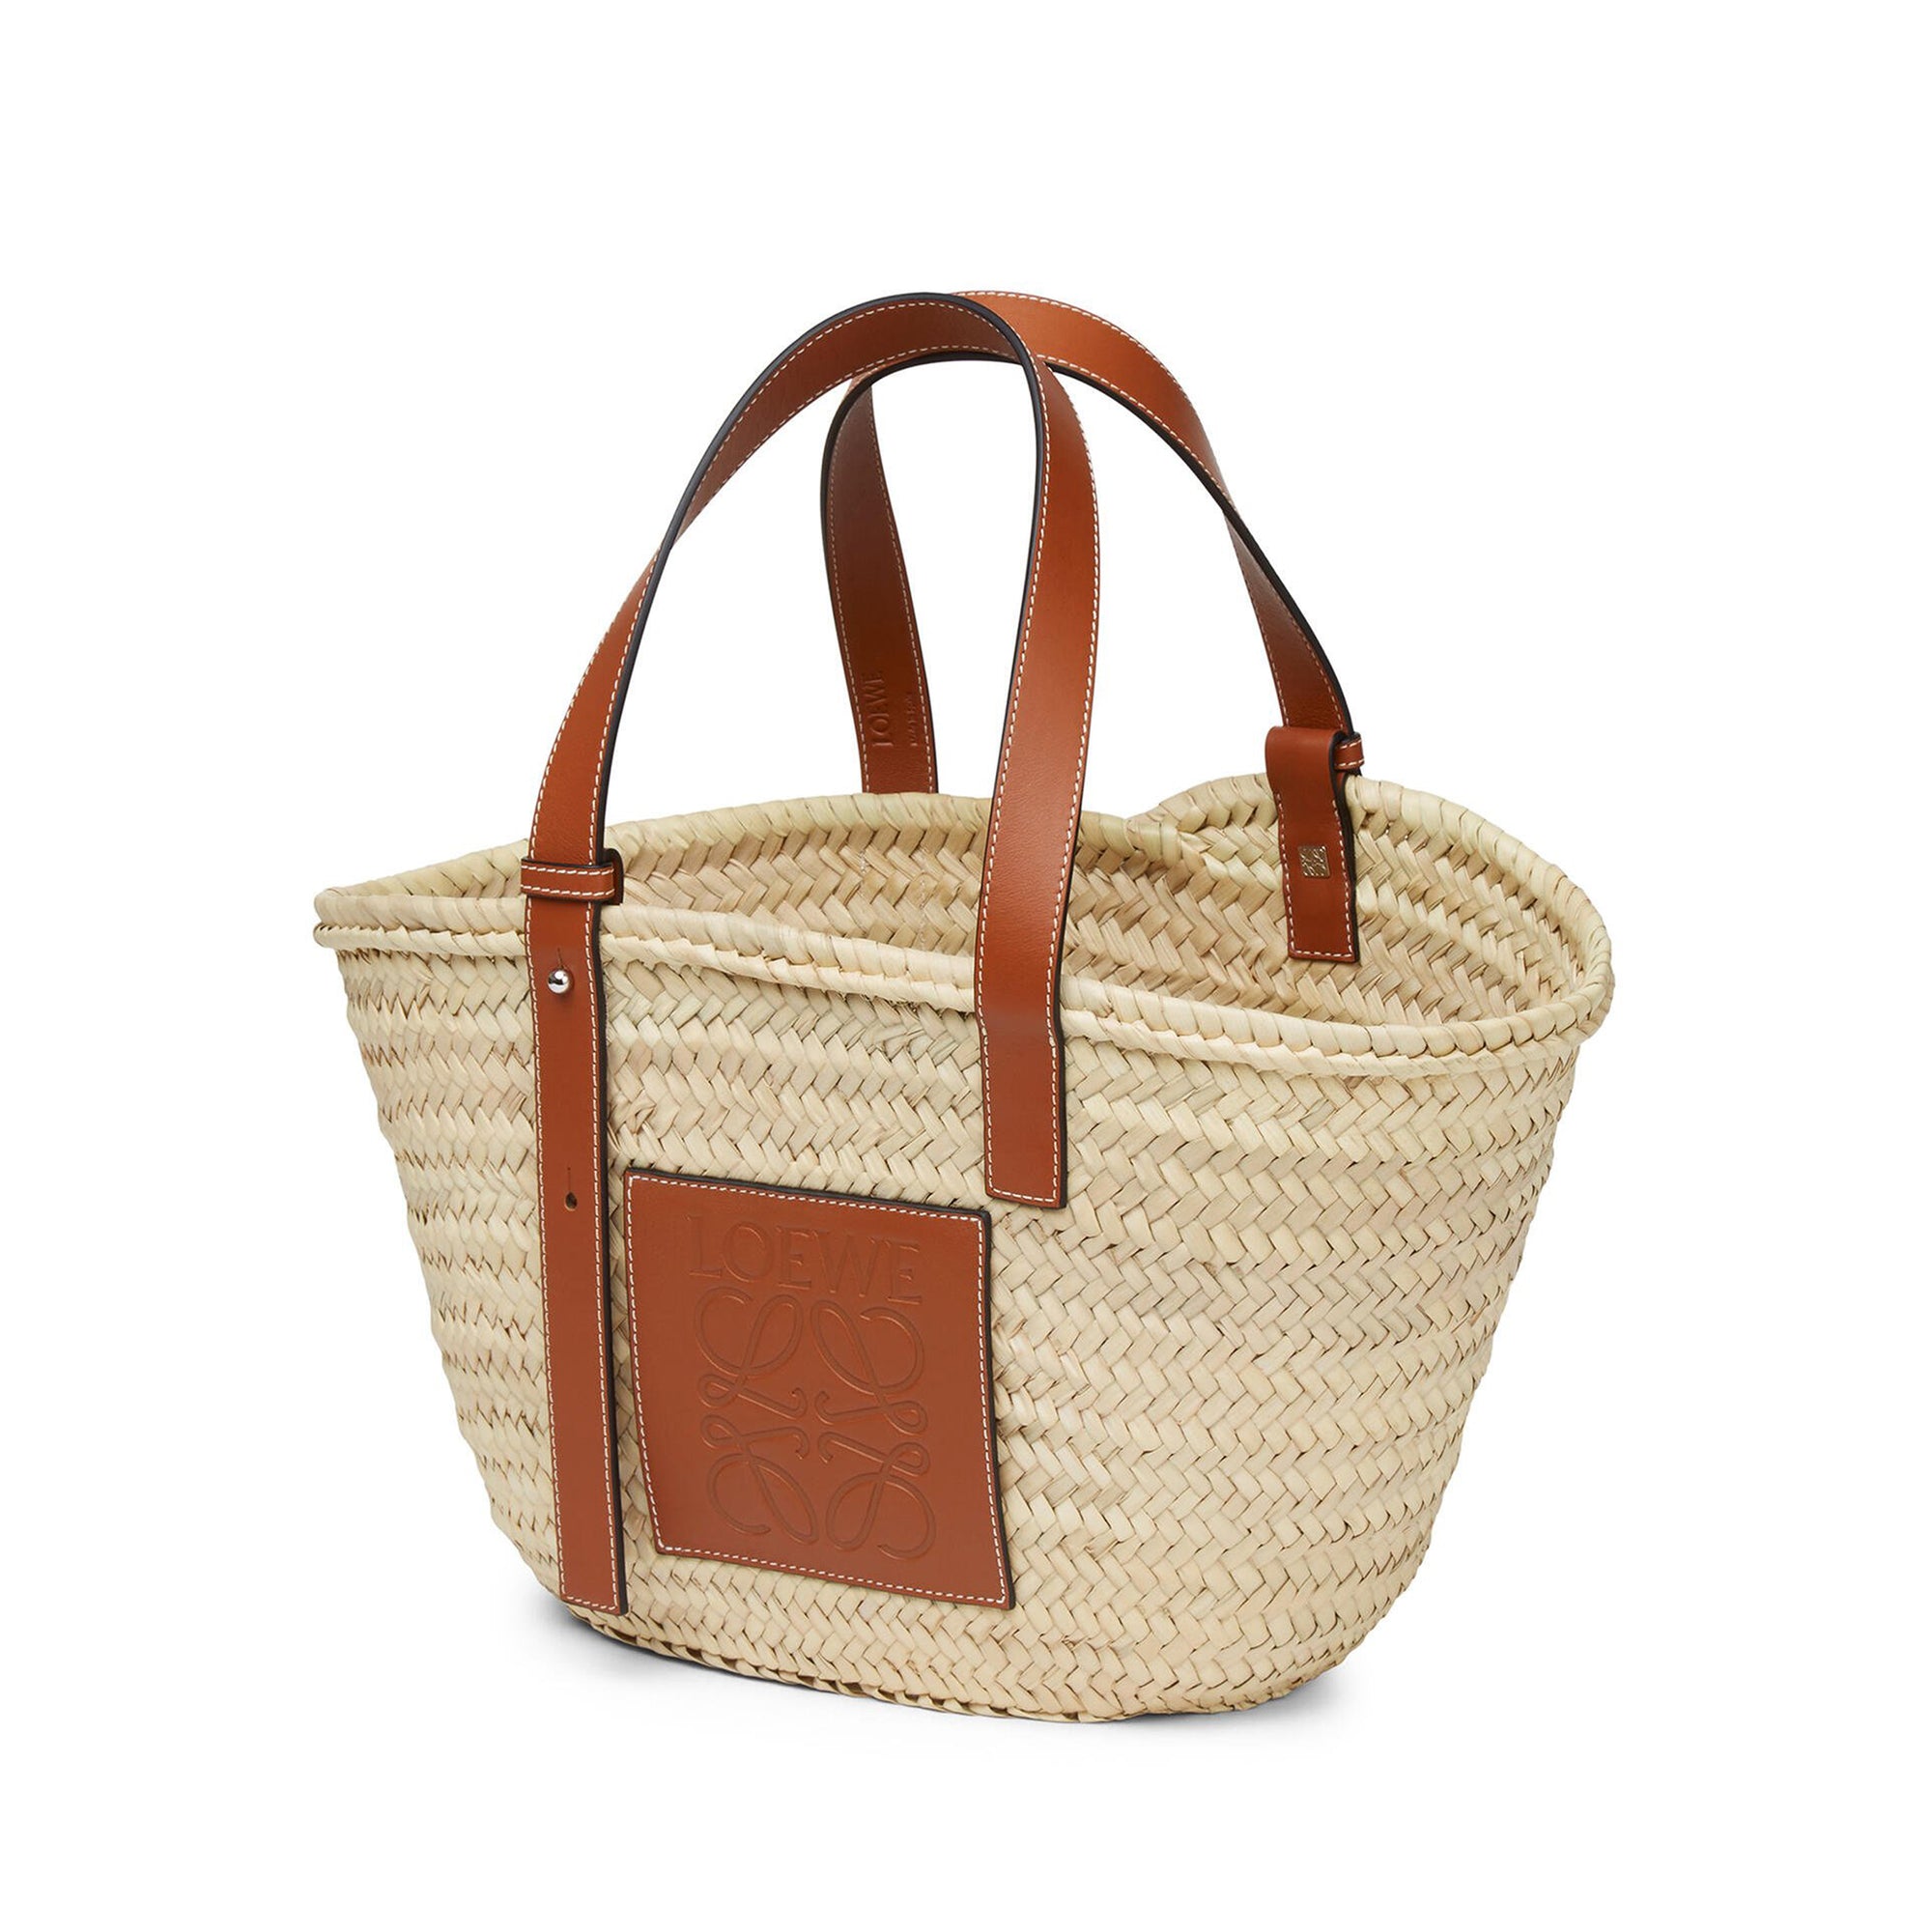 Loewe - Women’s Basket Bag - (Natural/Tan) view 3